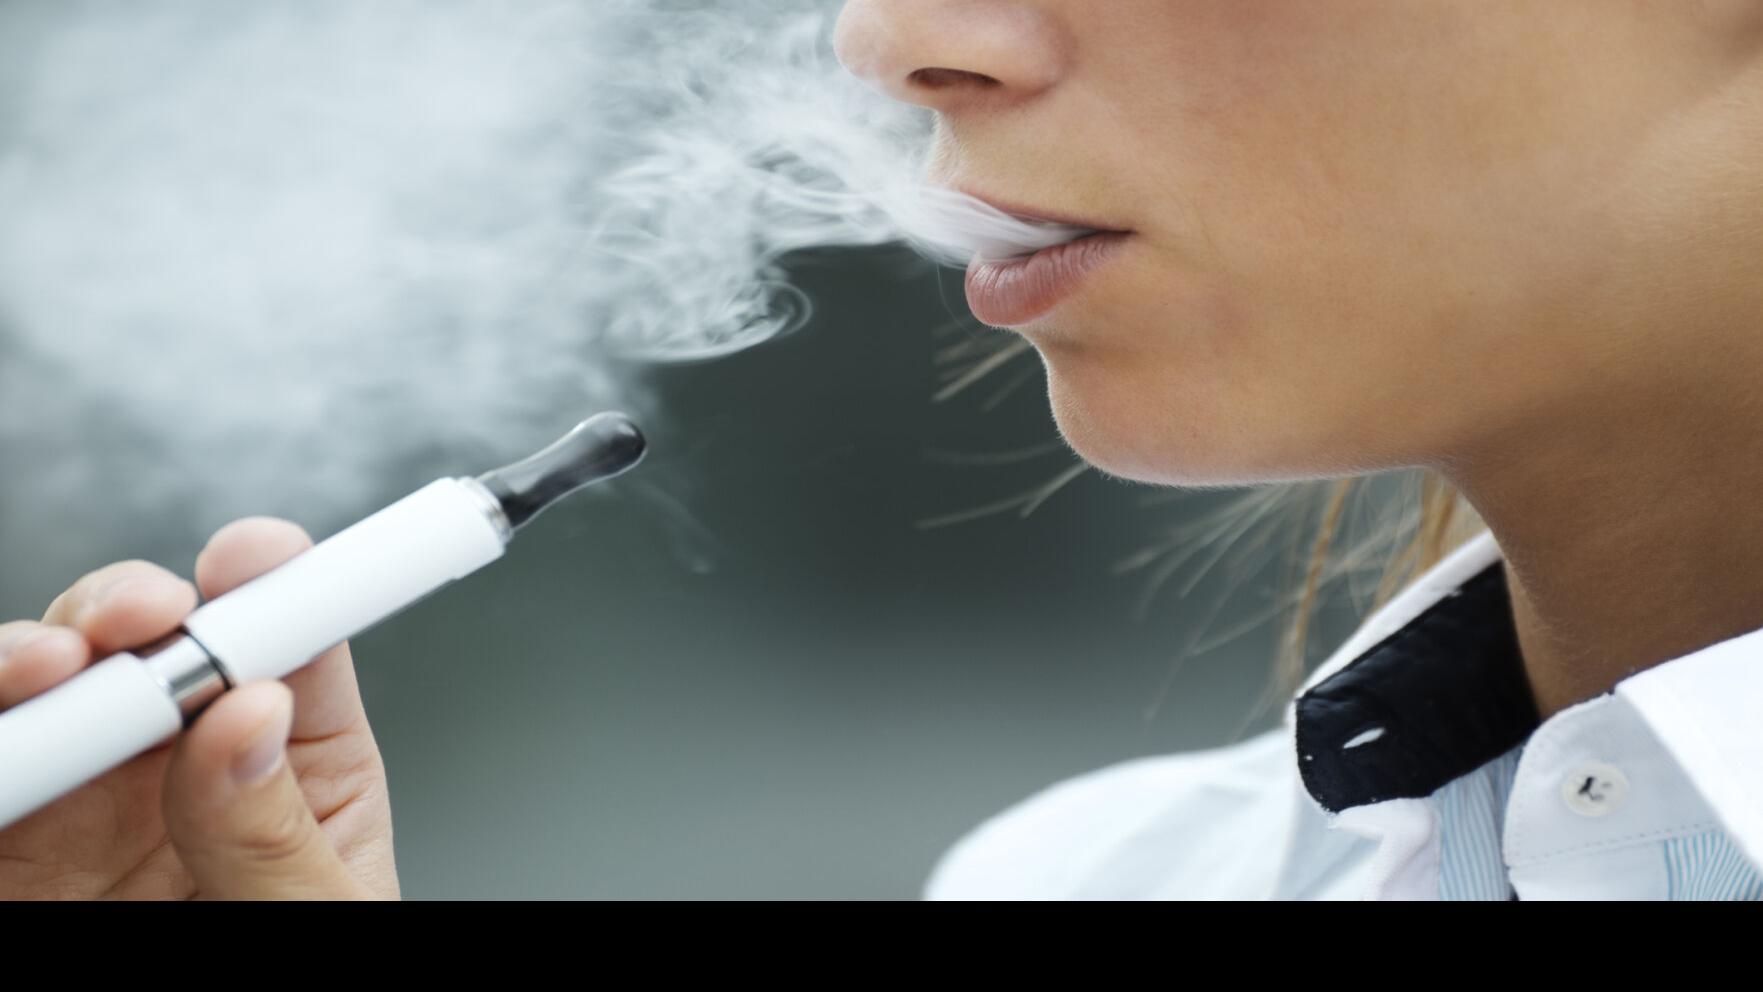 Washington State Department of Health on X: A partir del 1 de enero 2020,  la venta de tabaco y productos de vapor a personas menores de 21 años  estará prohibida por la